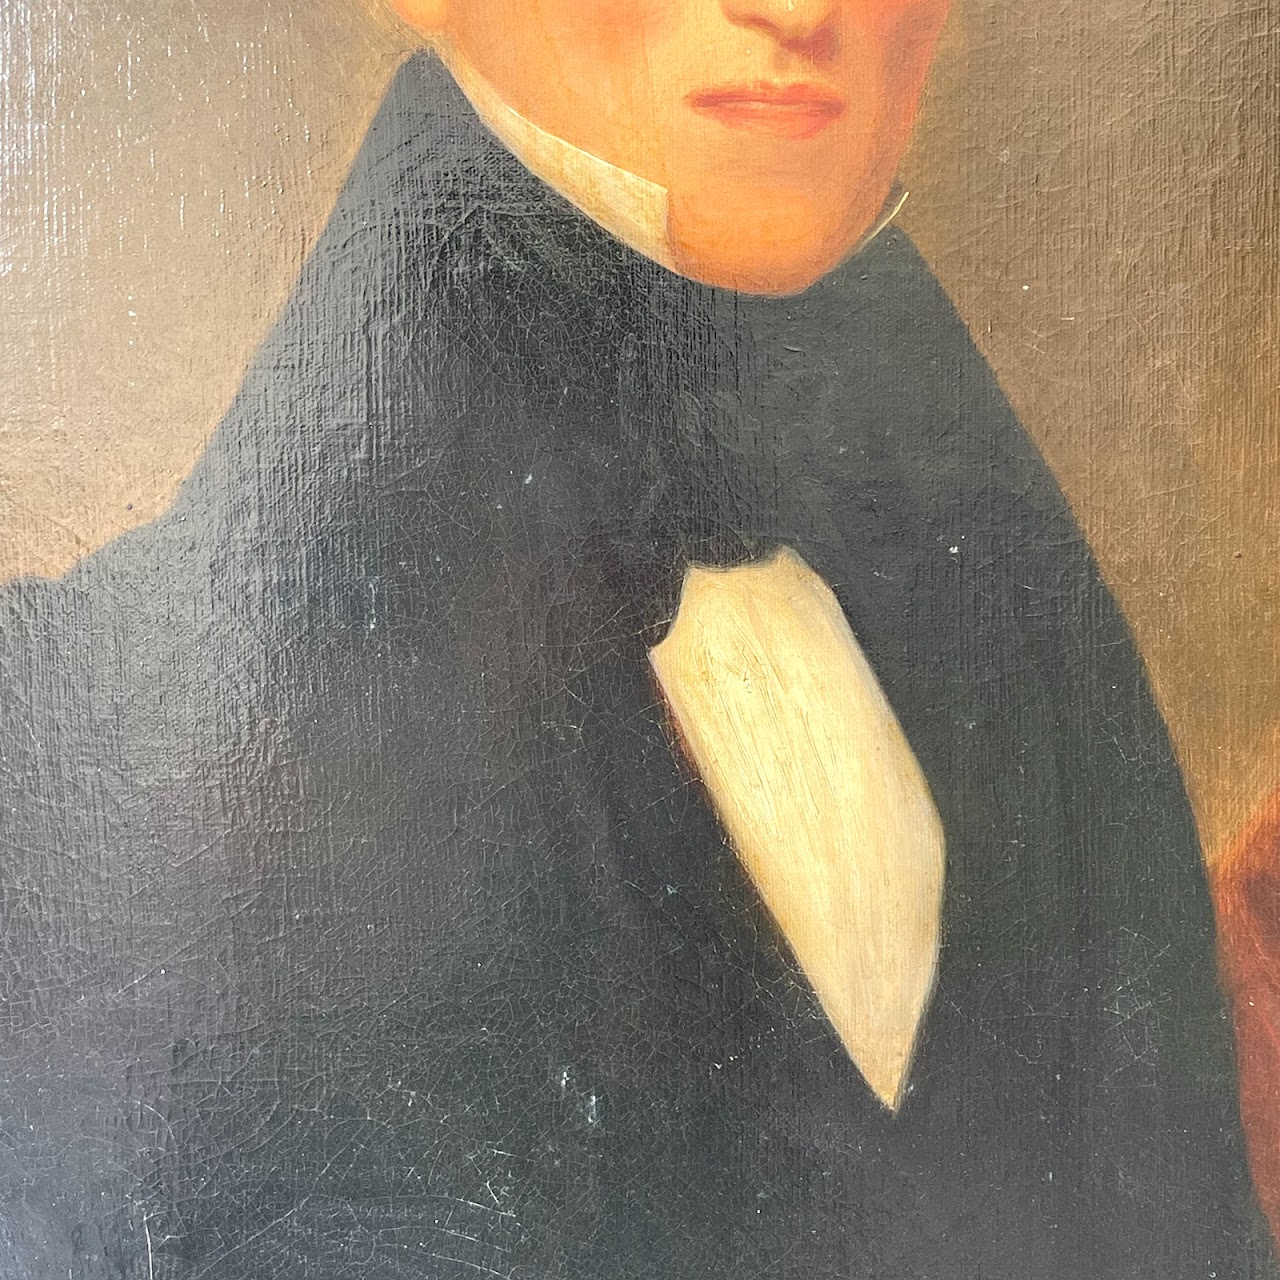 Antique Portrait Oil Painting